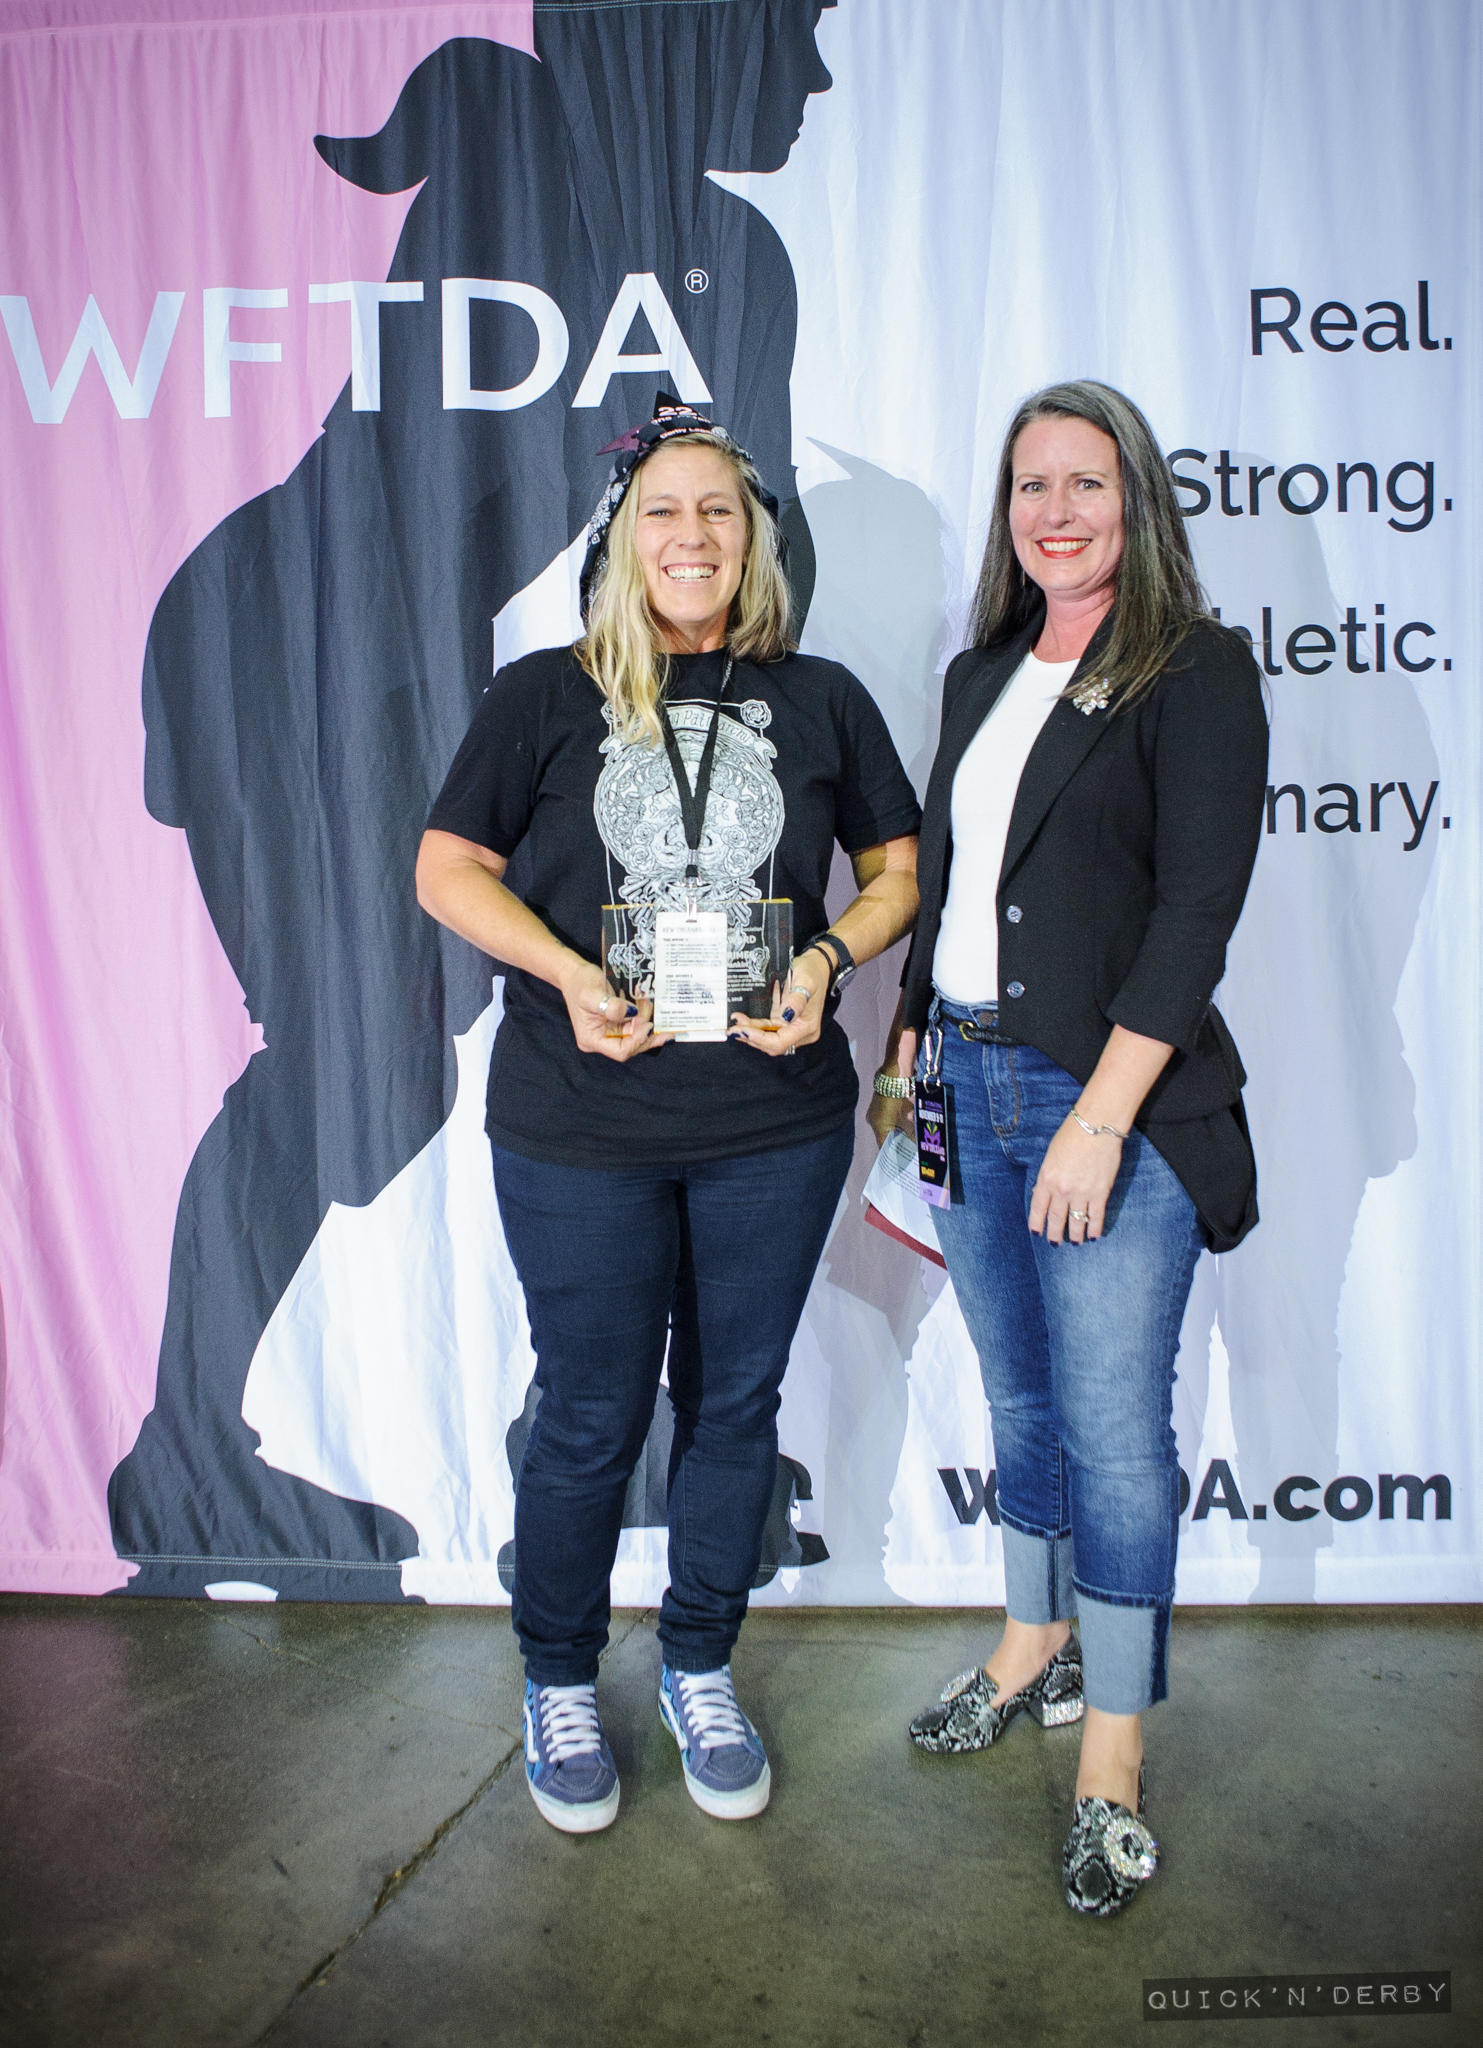 WFTDA Legend Award Recipient Ivanna Spankin